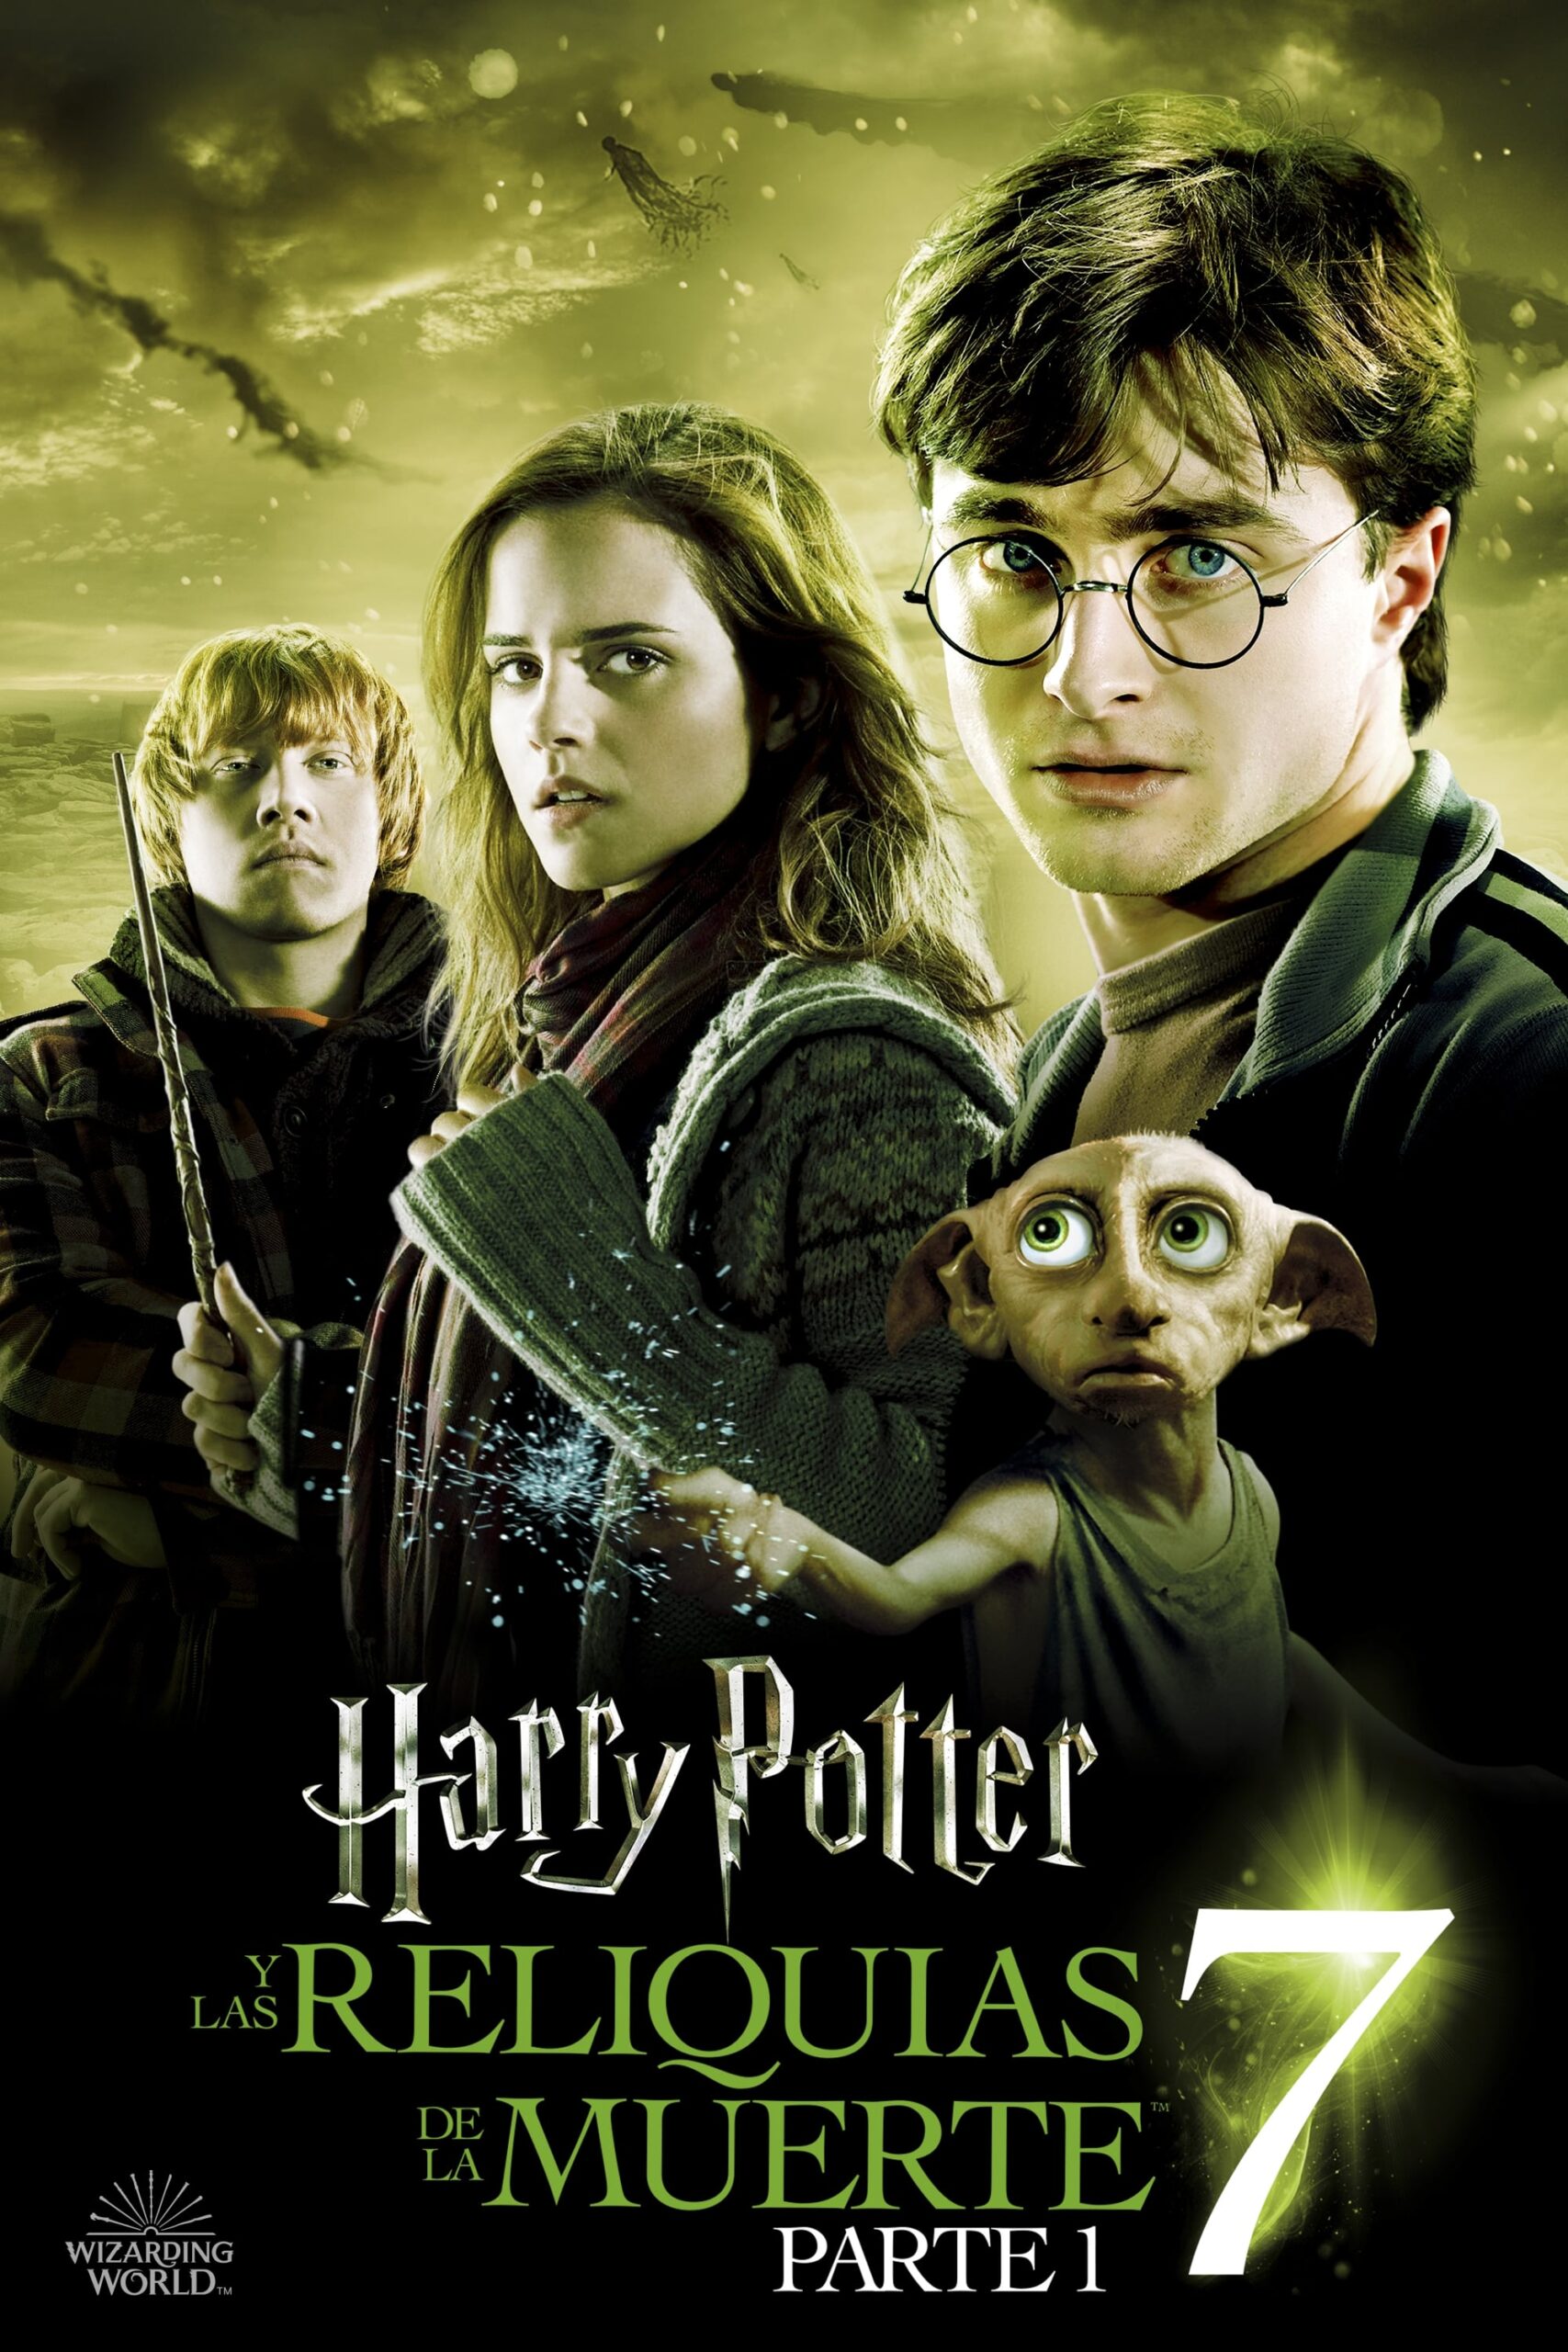 Harry Potter y las reliquias de la muerte, Parte 1